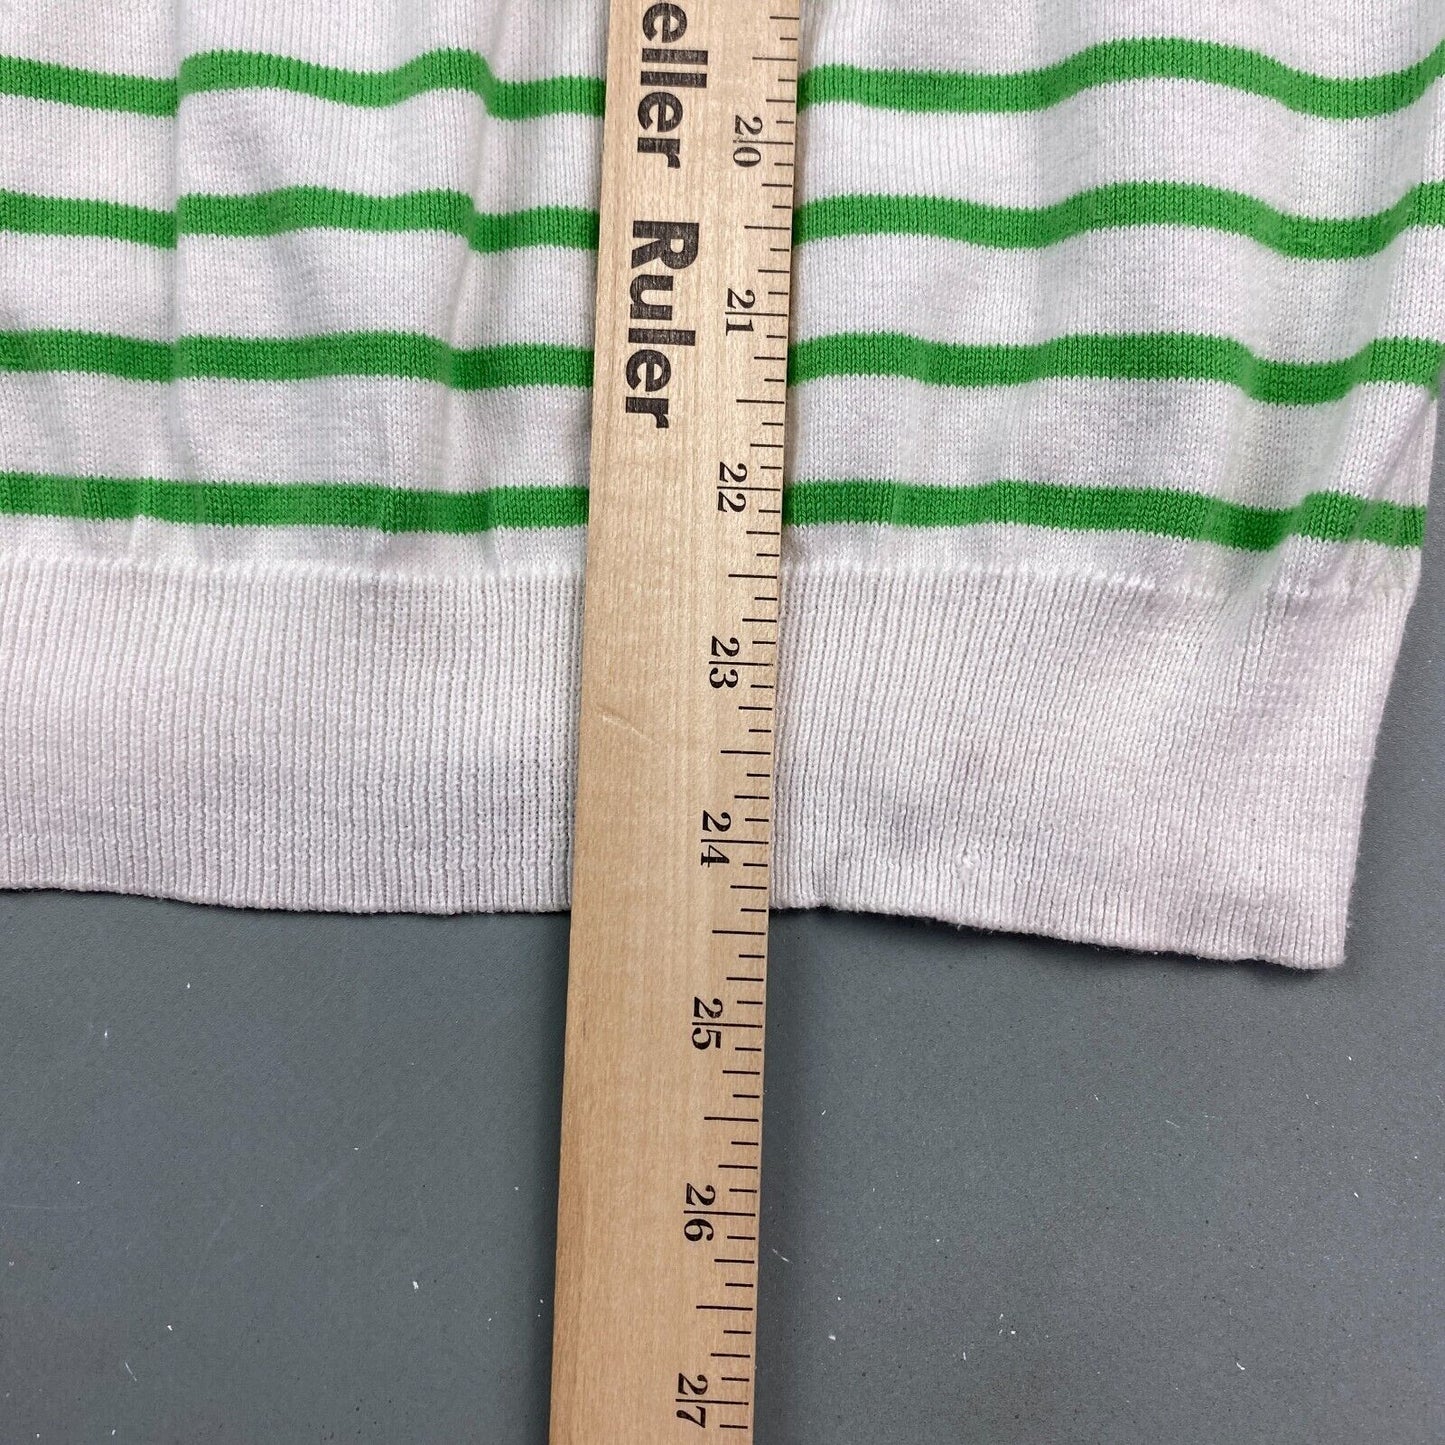 VINTAGE Ralph Lauren Sport Striped T-Shirt sz XL Womens